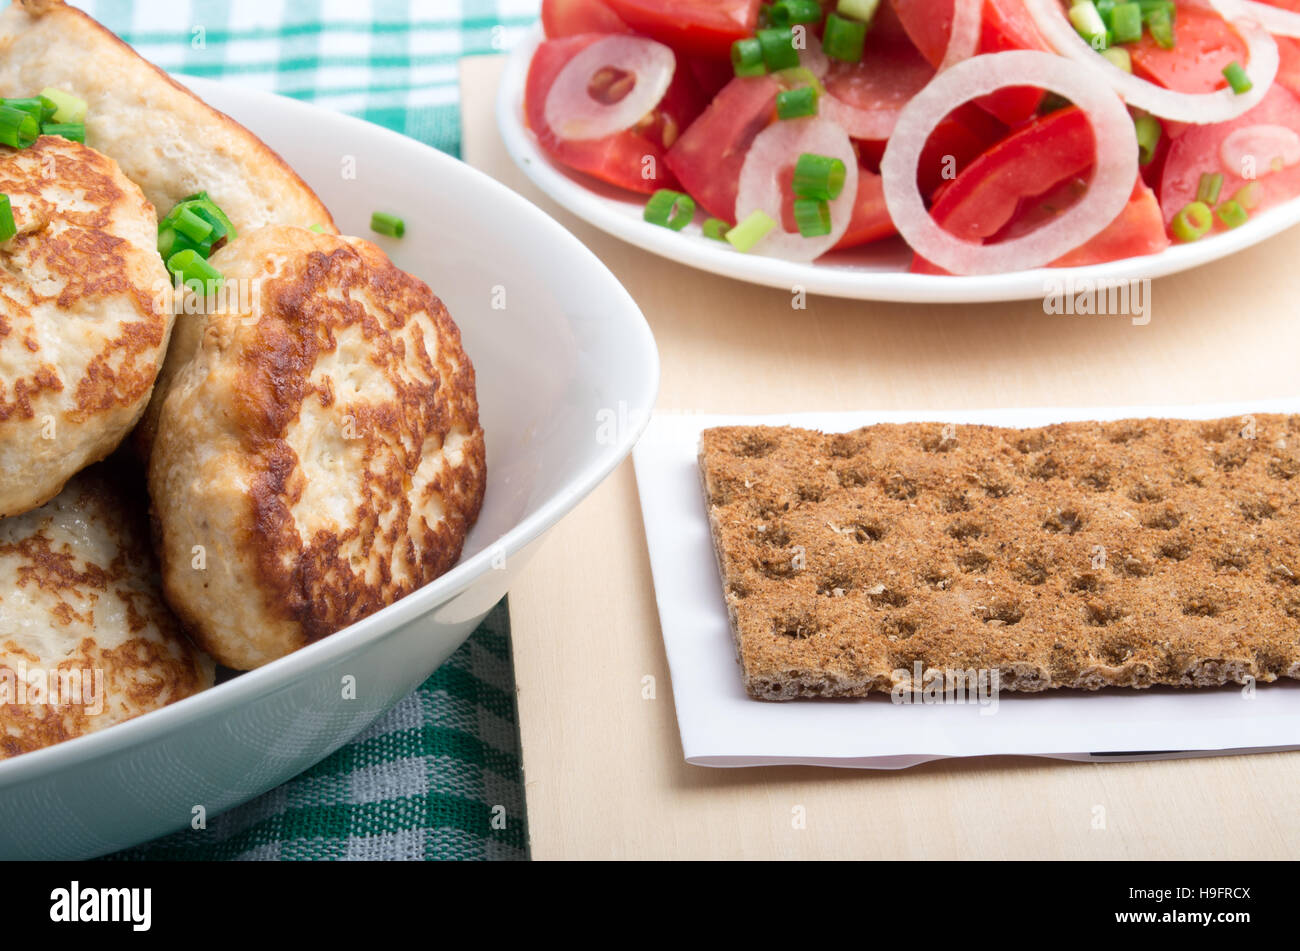 Cuisine maison russe - gros plan avec des poireaux filet de poulet, le pain de seigle et une salade de tomates fraîches, les poireaux et l'oignon sur une nappe verte Banque D'Images